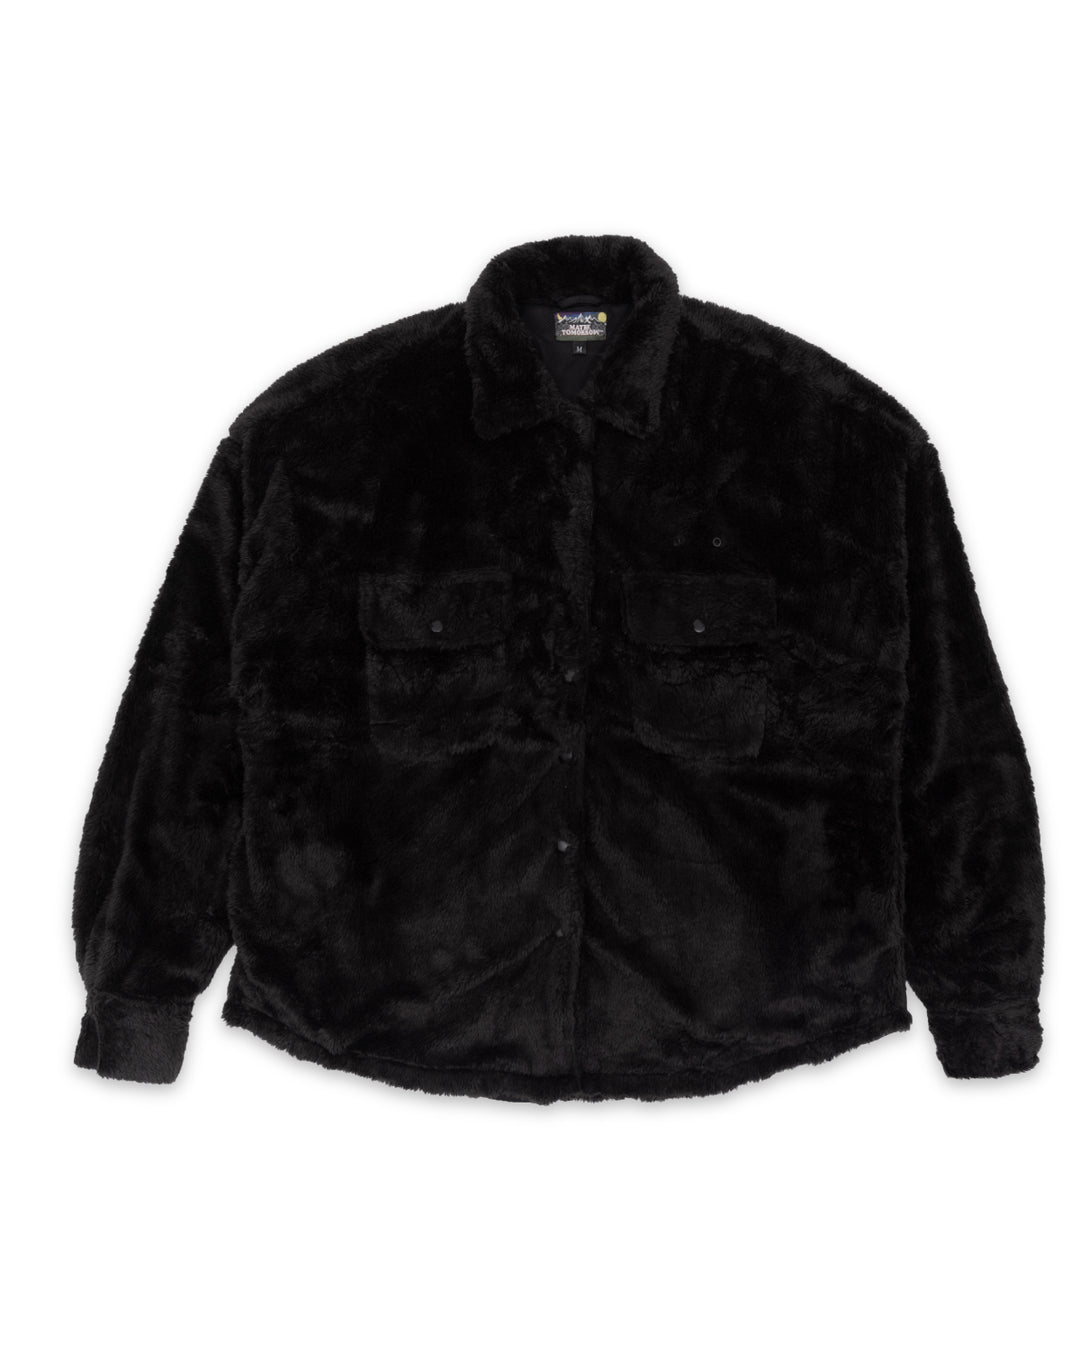 Bear Shirt - Black